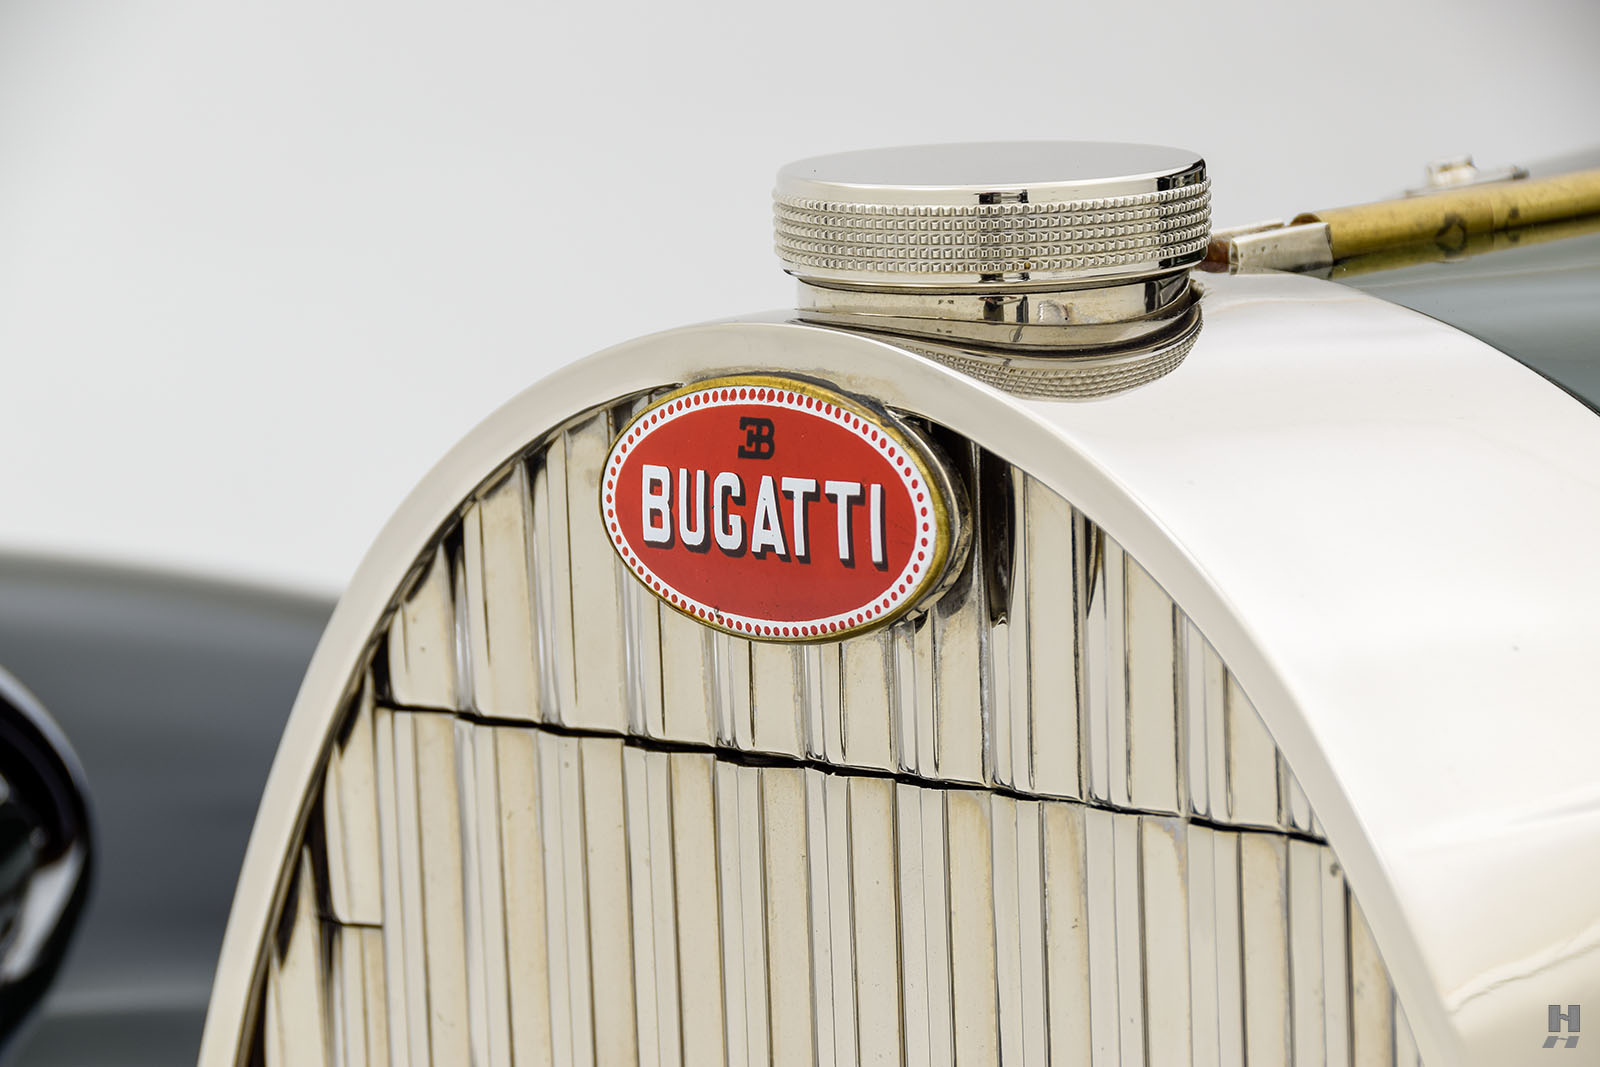 1937 bugatti type 57 ventoux